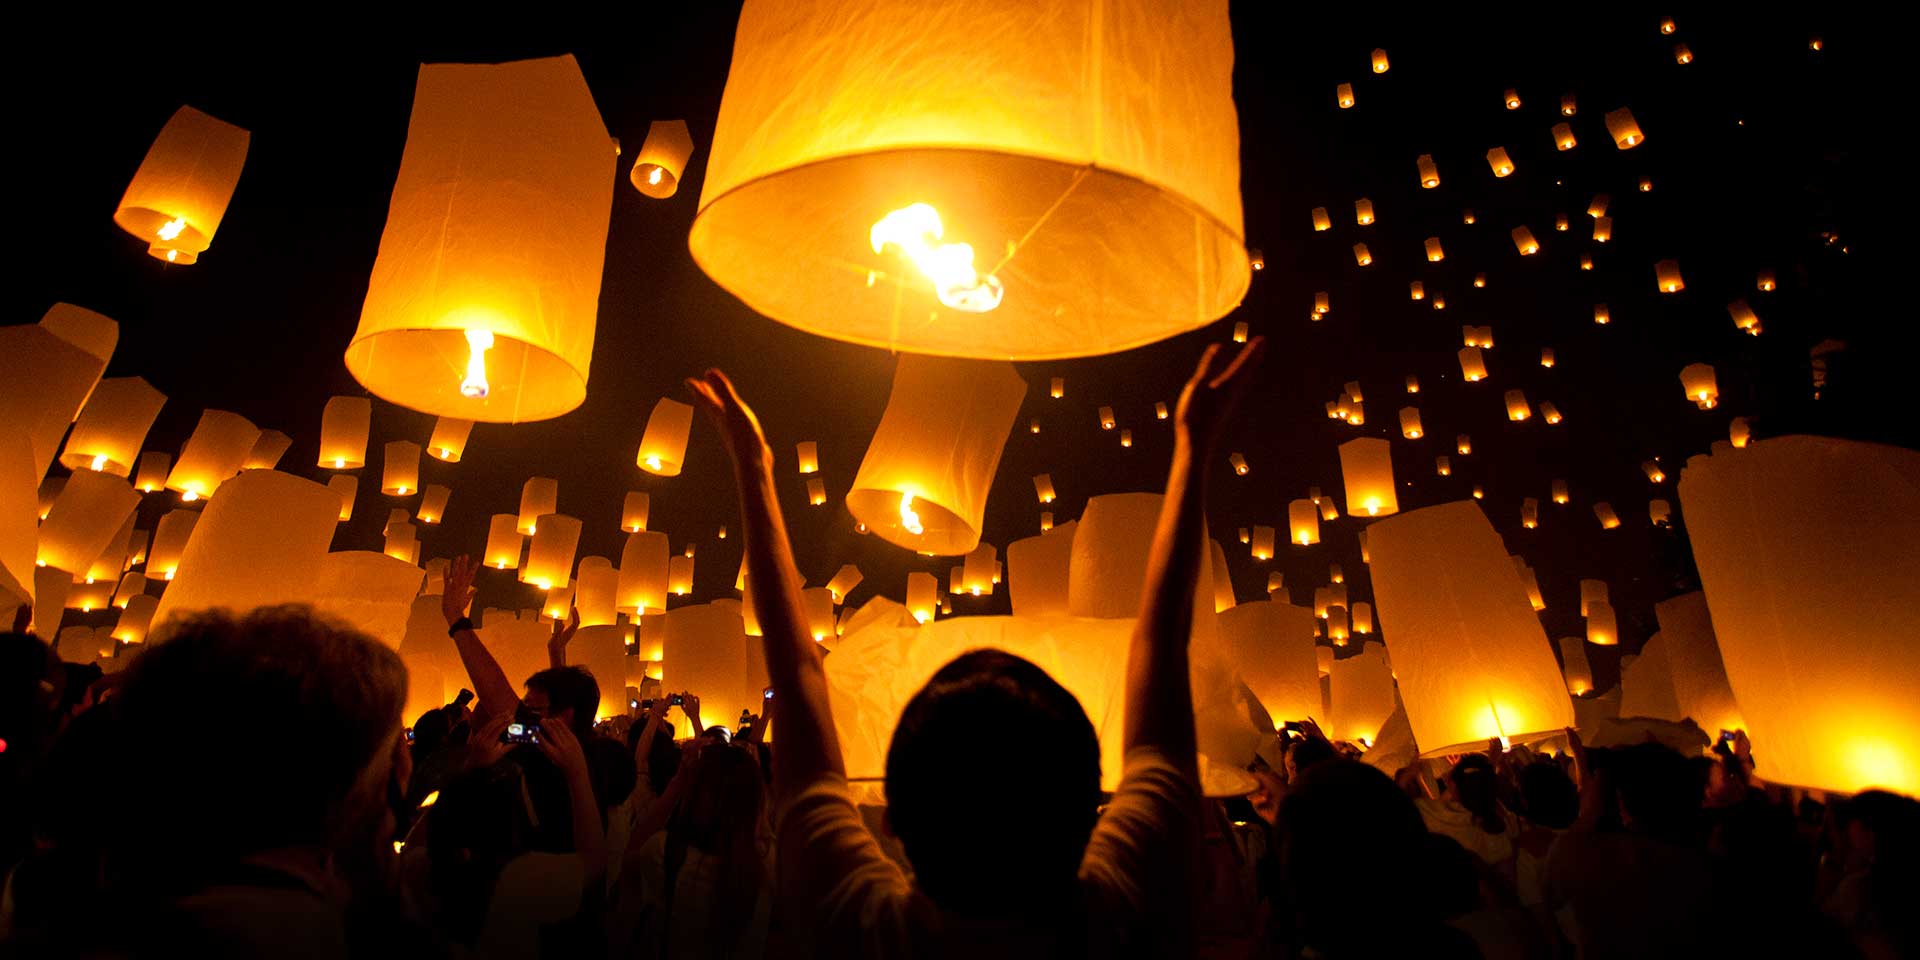 lantern festival in thailand